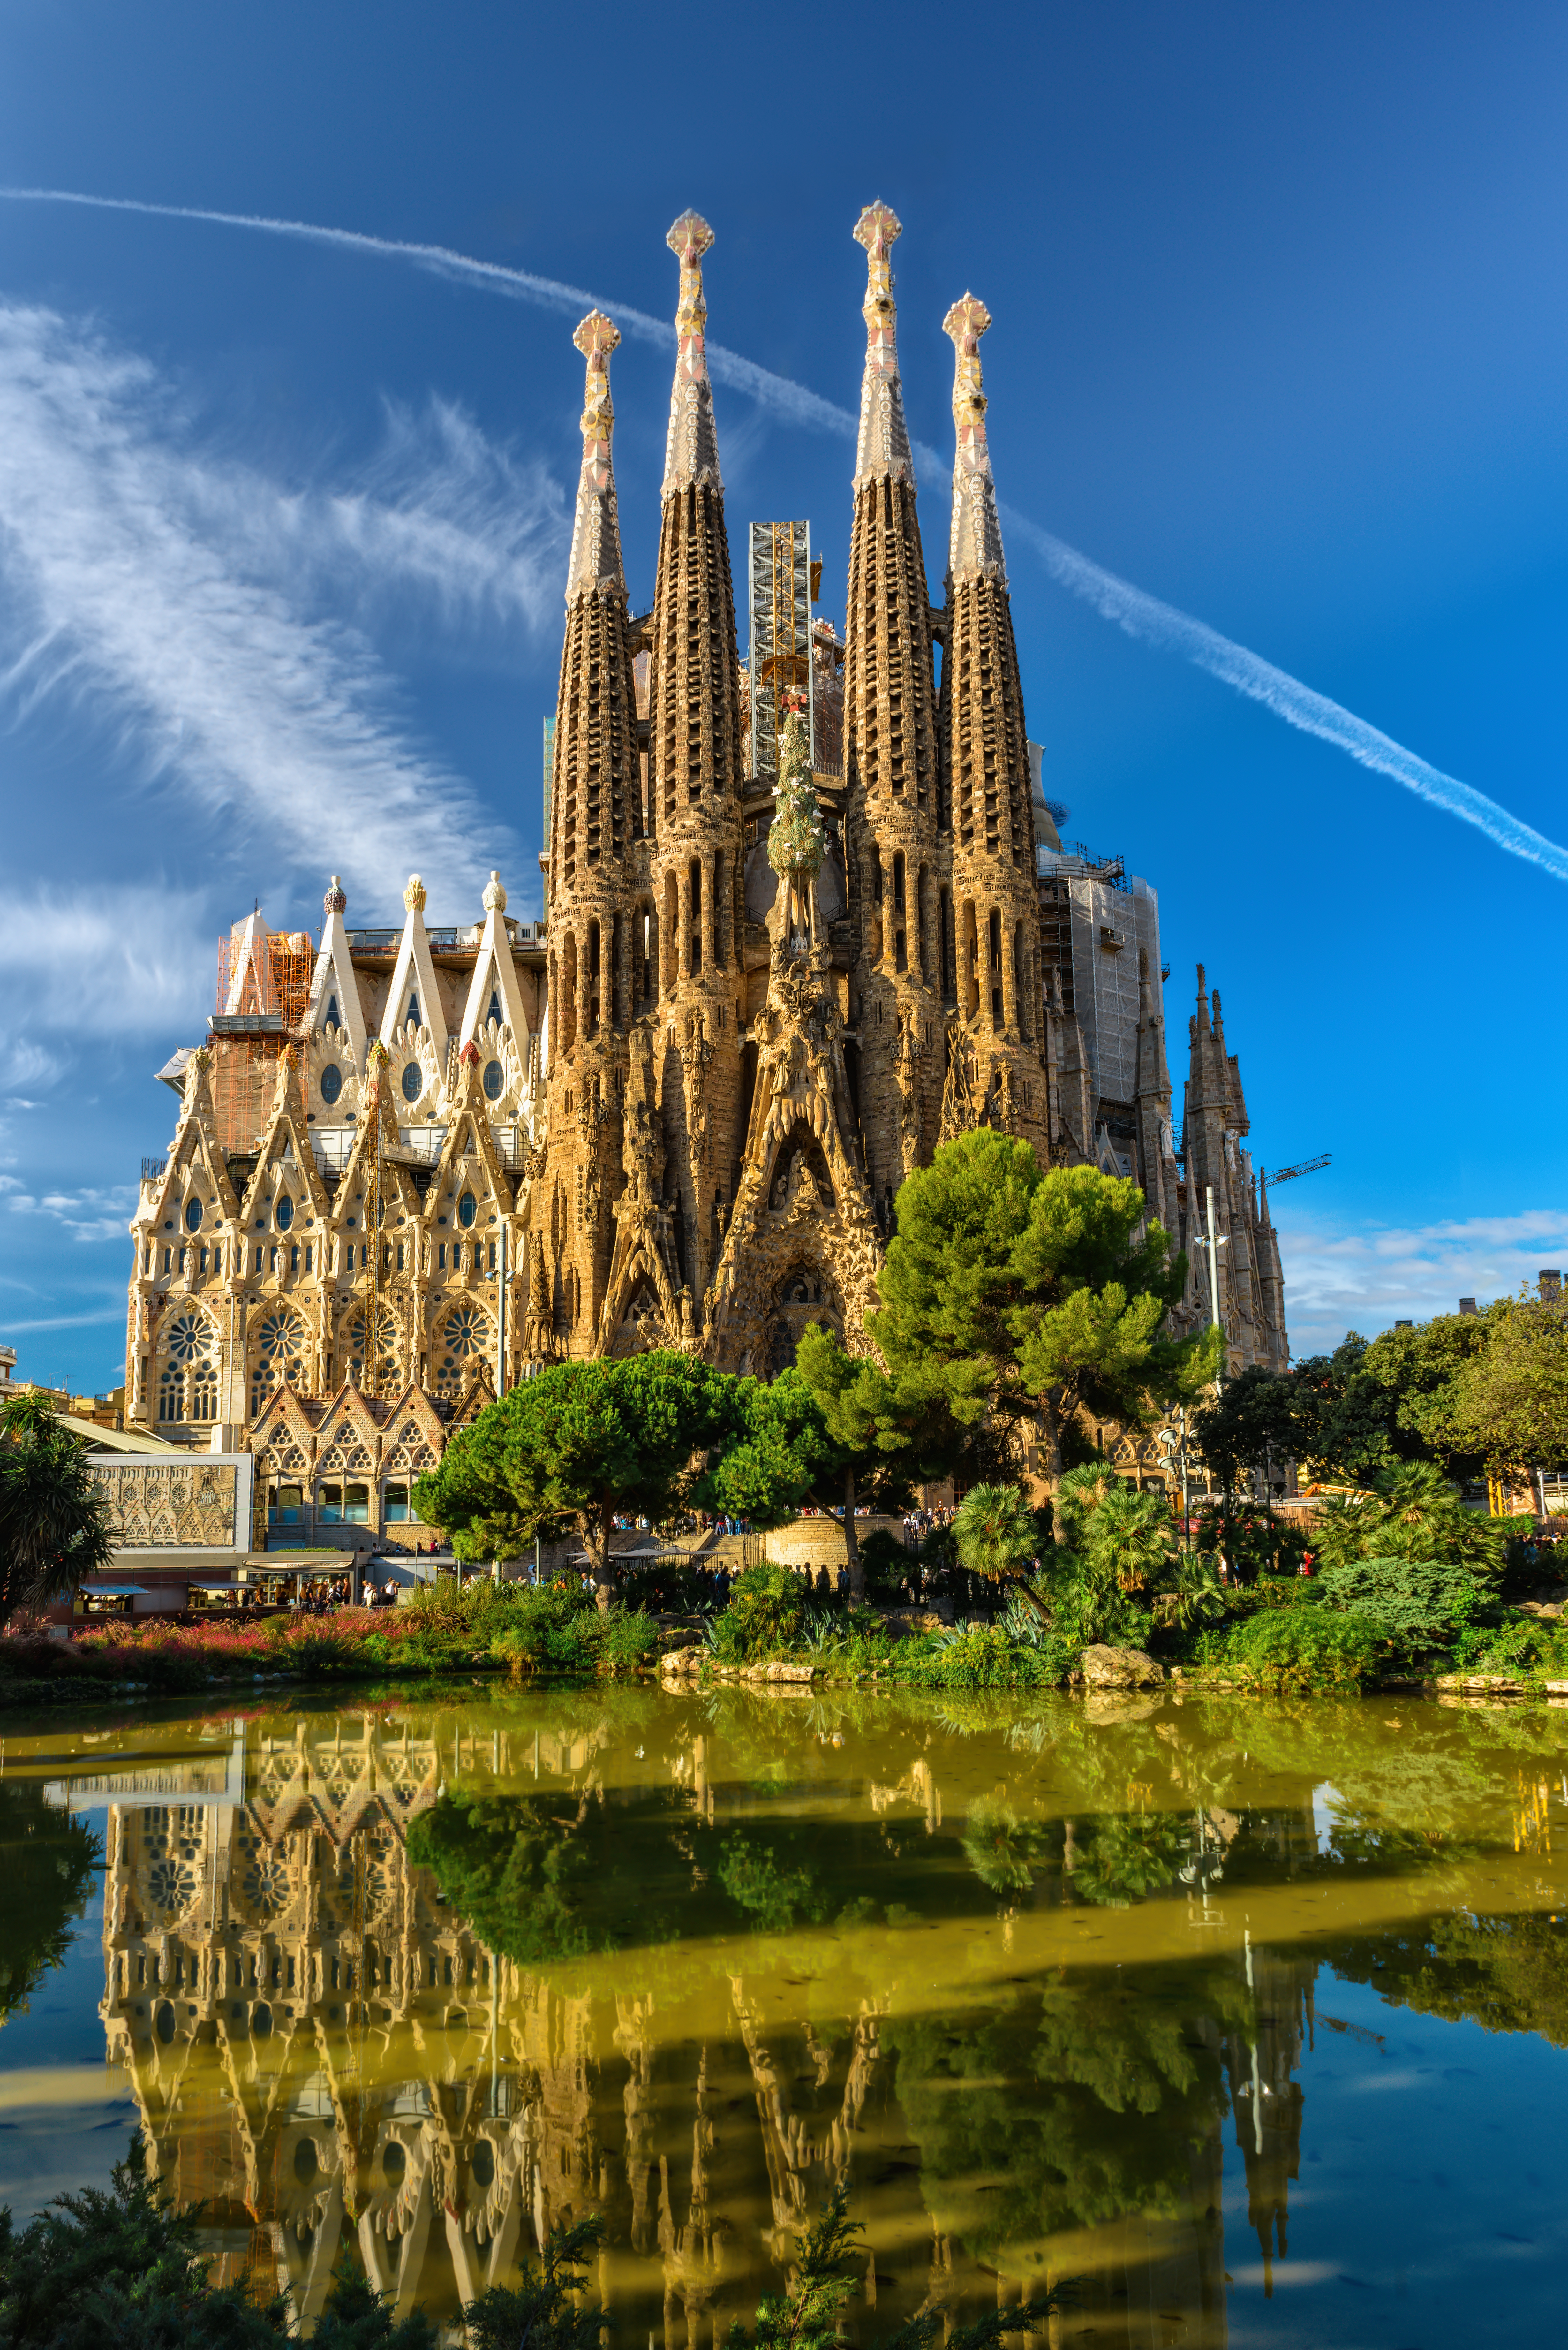 Cathedral of La Sagrada Familia, designed by Antoni Gaudí